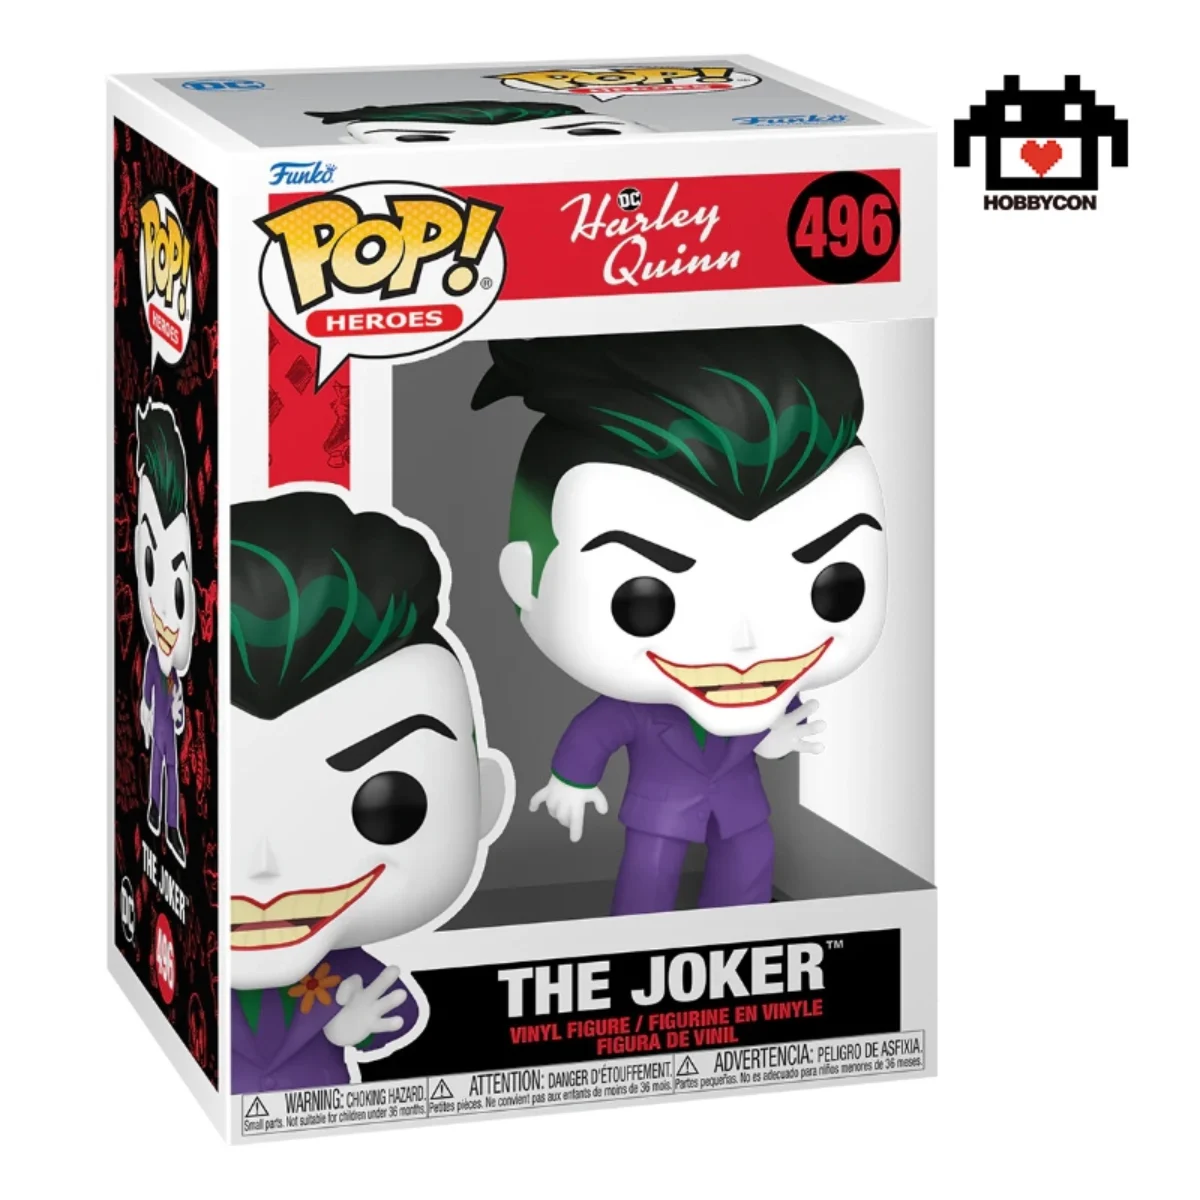 The Joker - Harley Quinn – 496 – Funko Pop! - HobbyCon